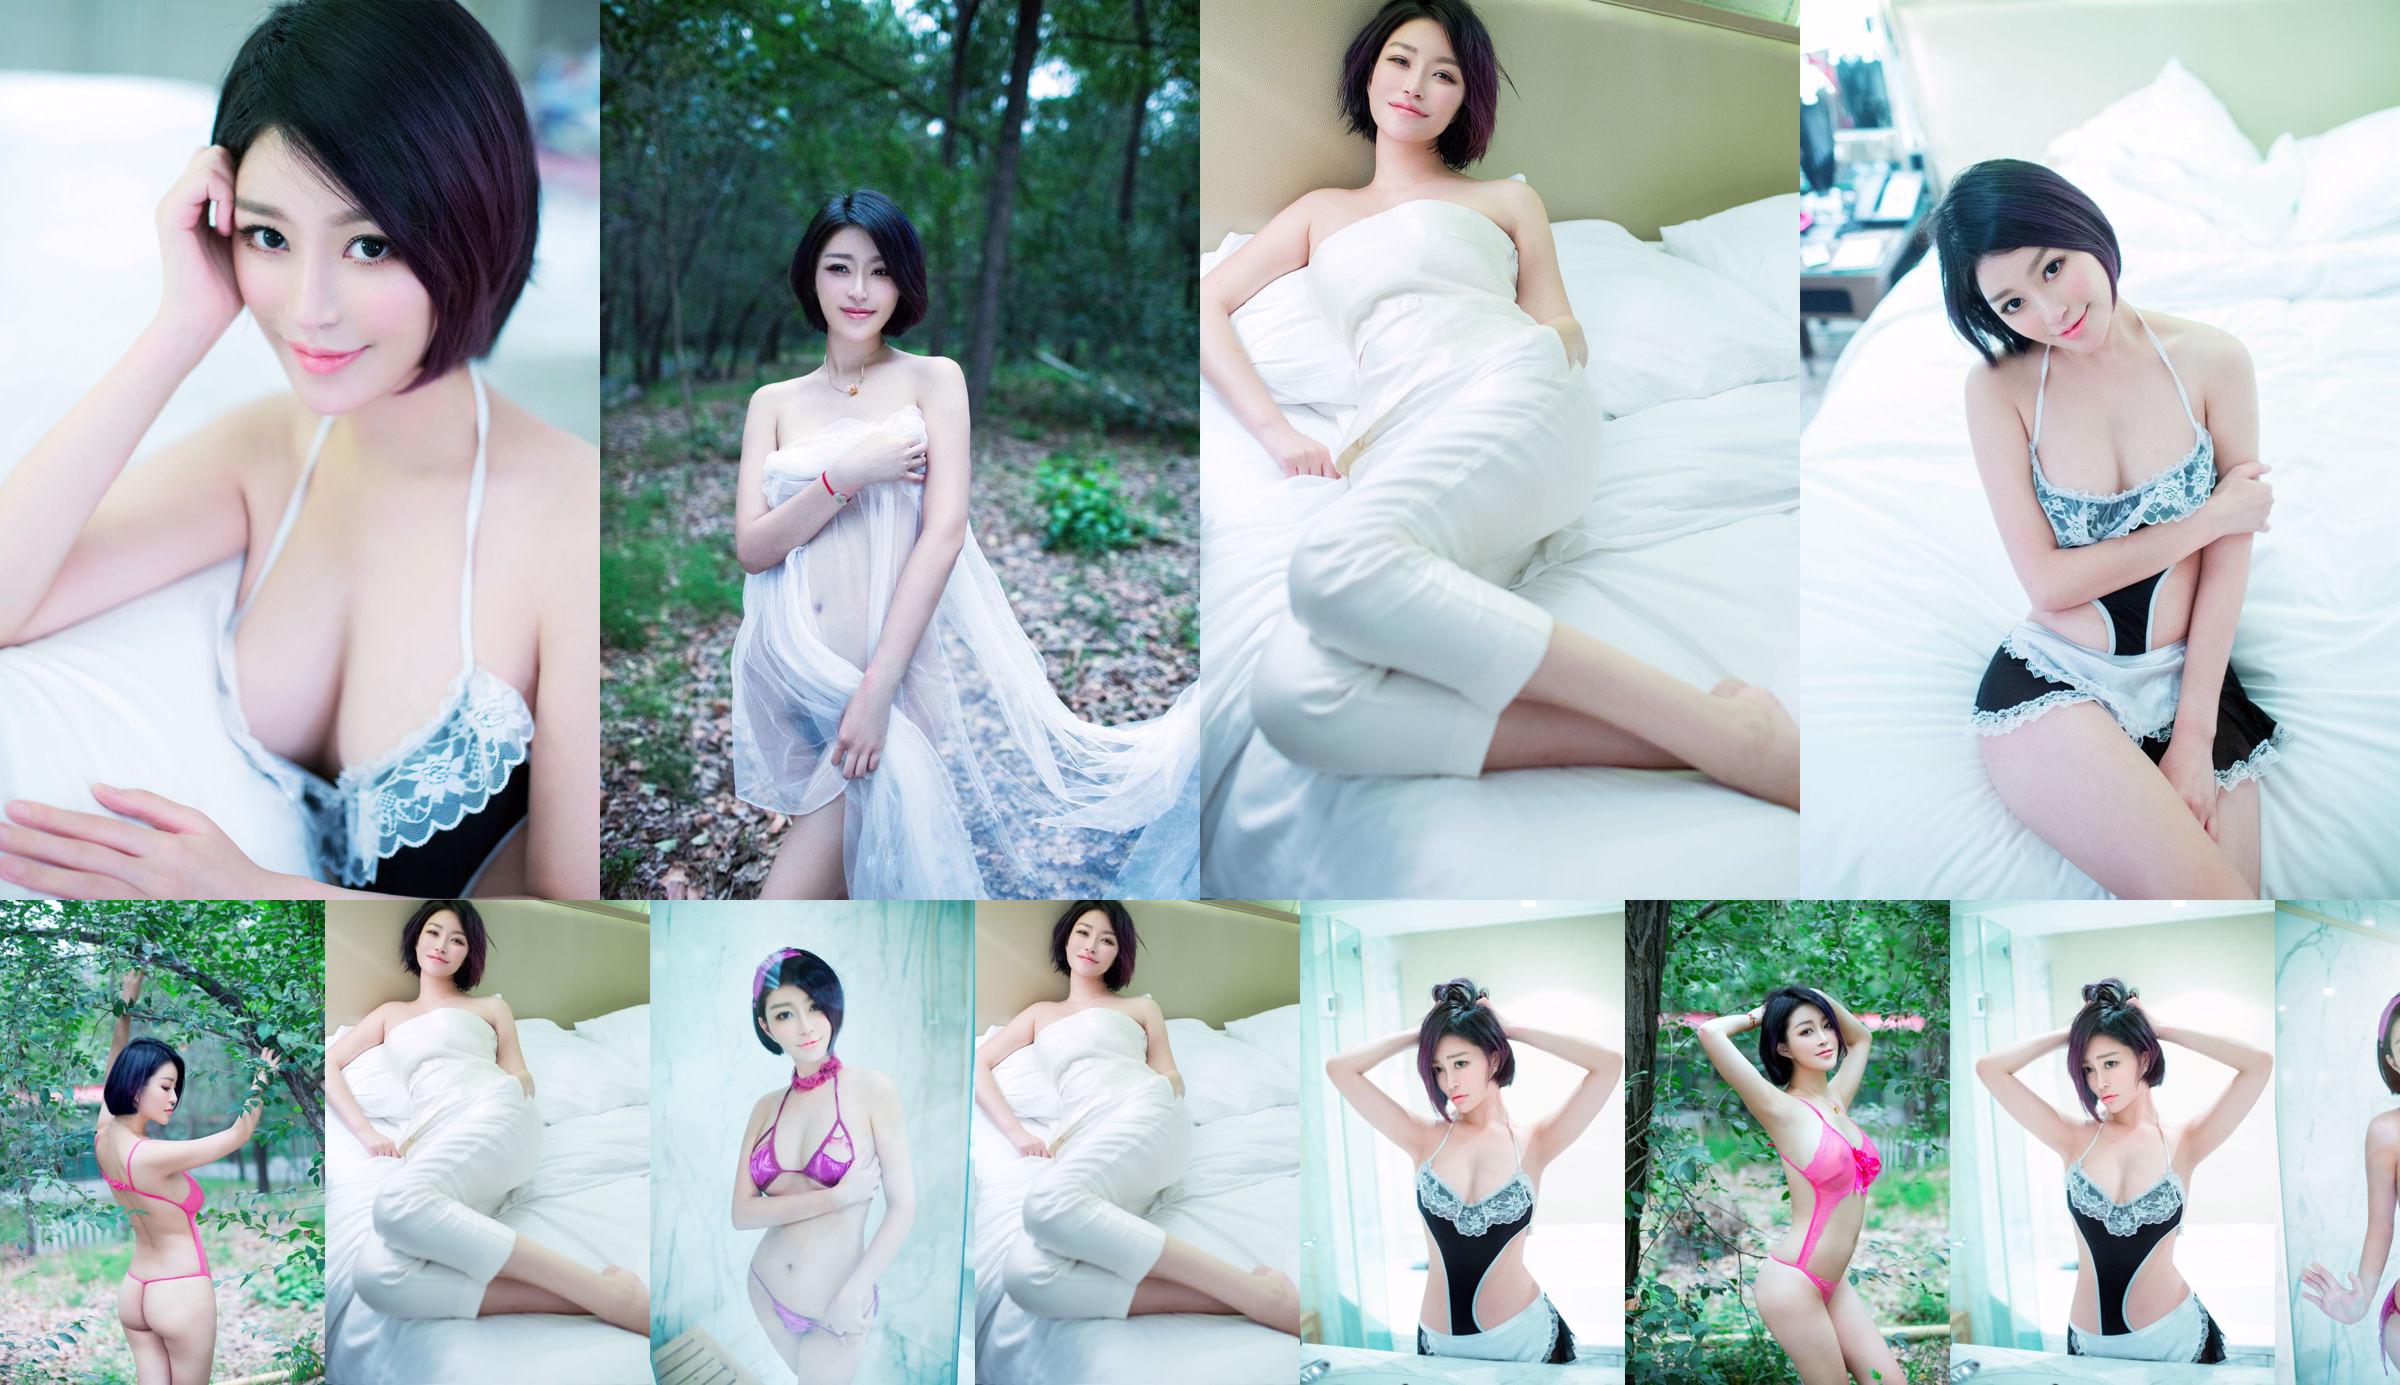 Jin Youxi «Yu Yun Ping Ting, Graceful Love» [Push Girl Tui Girl] No.045 No.edceef Page 1